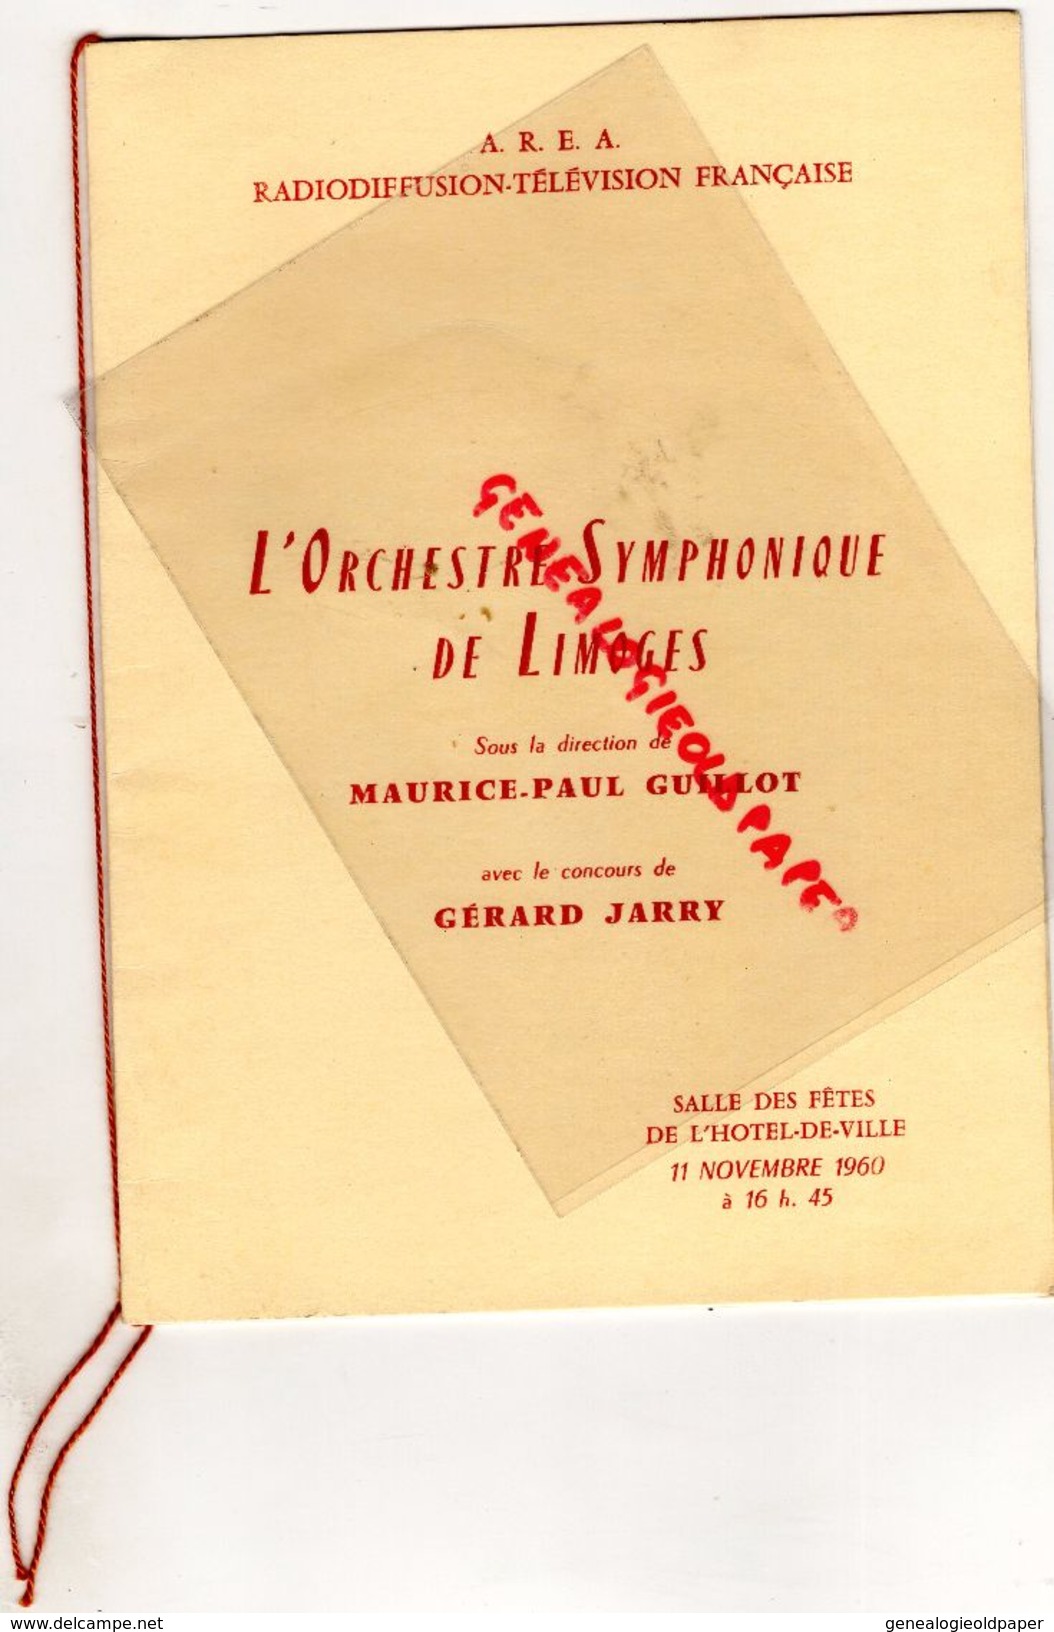 87 - LIMOGES- PROGRAMME ORCHESTRE SYMPHONIQUE -MAURICE PAUL GUILLOT- GERARD JARRY-HOTEL DE VILLE -11-11-1960-HAENDEL- - Programma's